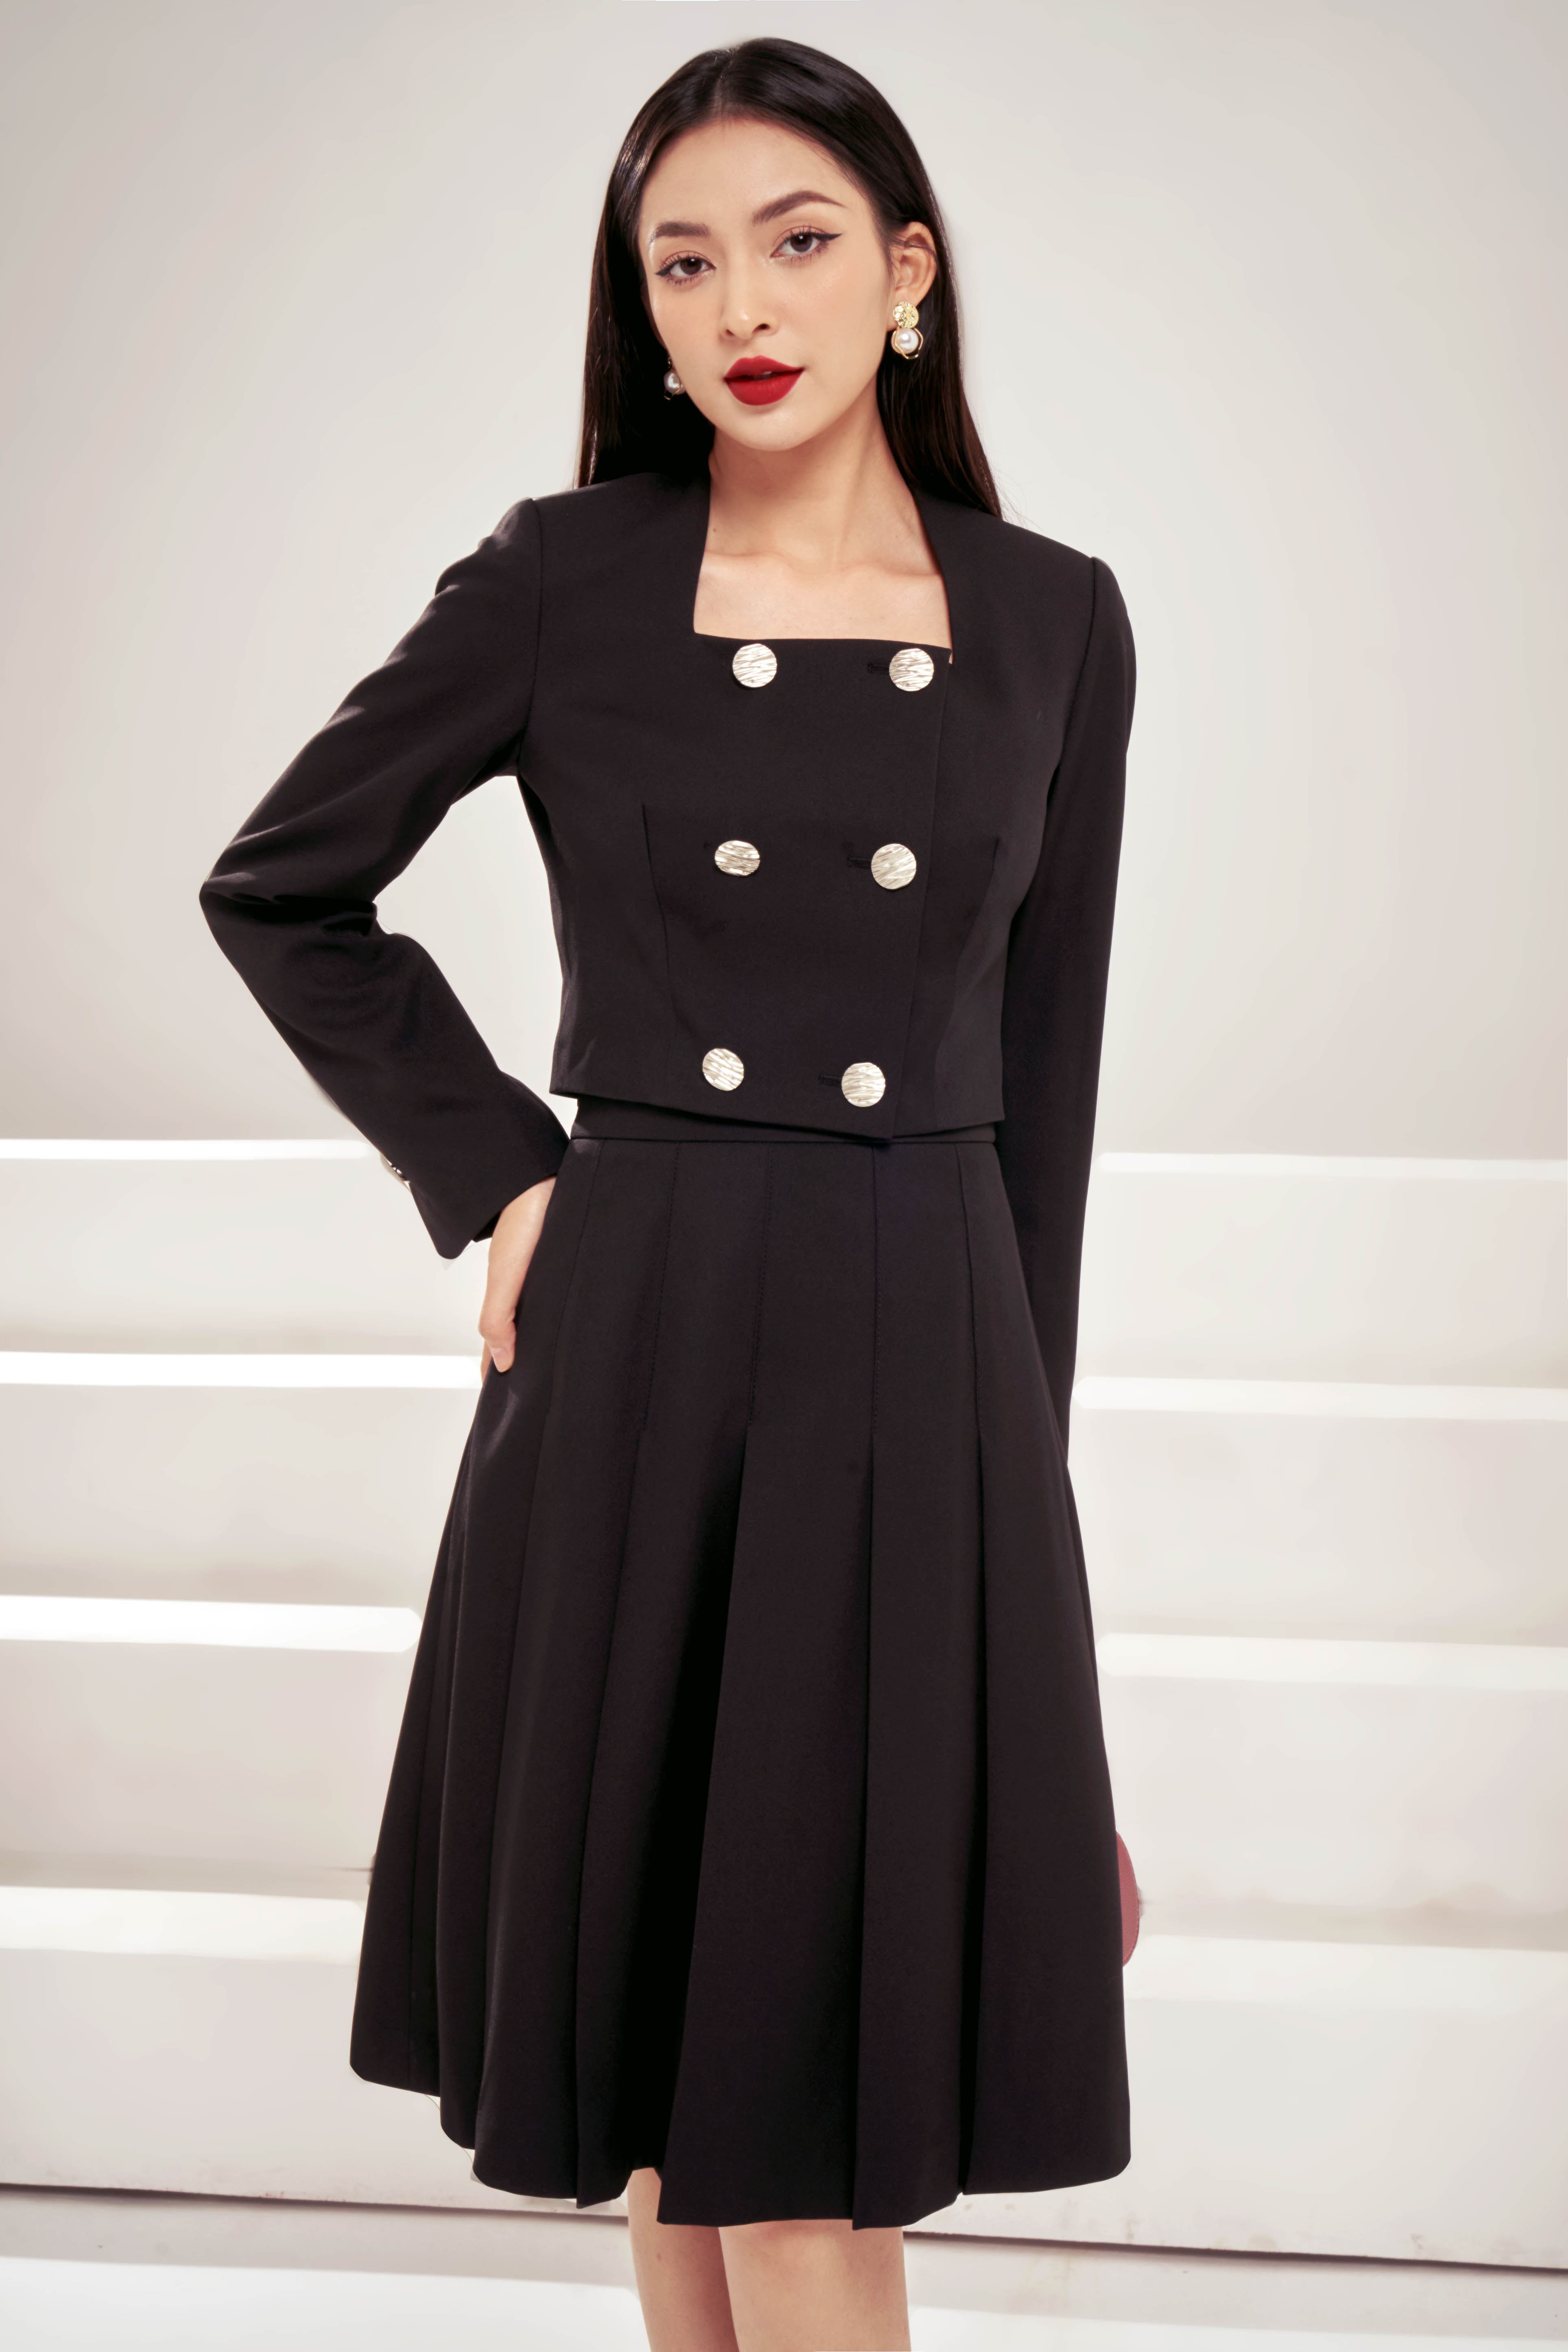 Áo khoác nữ viền phối ren đen - Hàng đẹp với giá tốt nhất